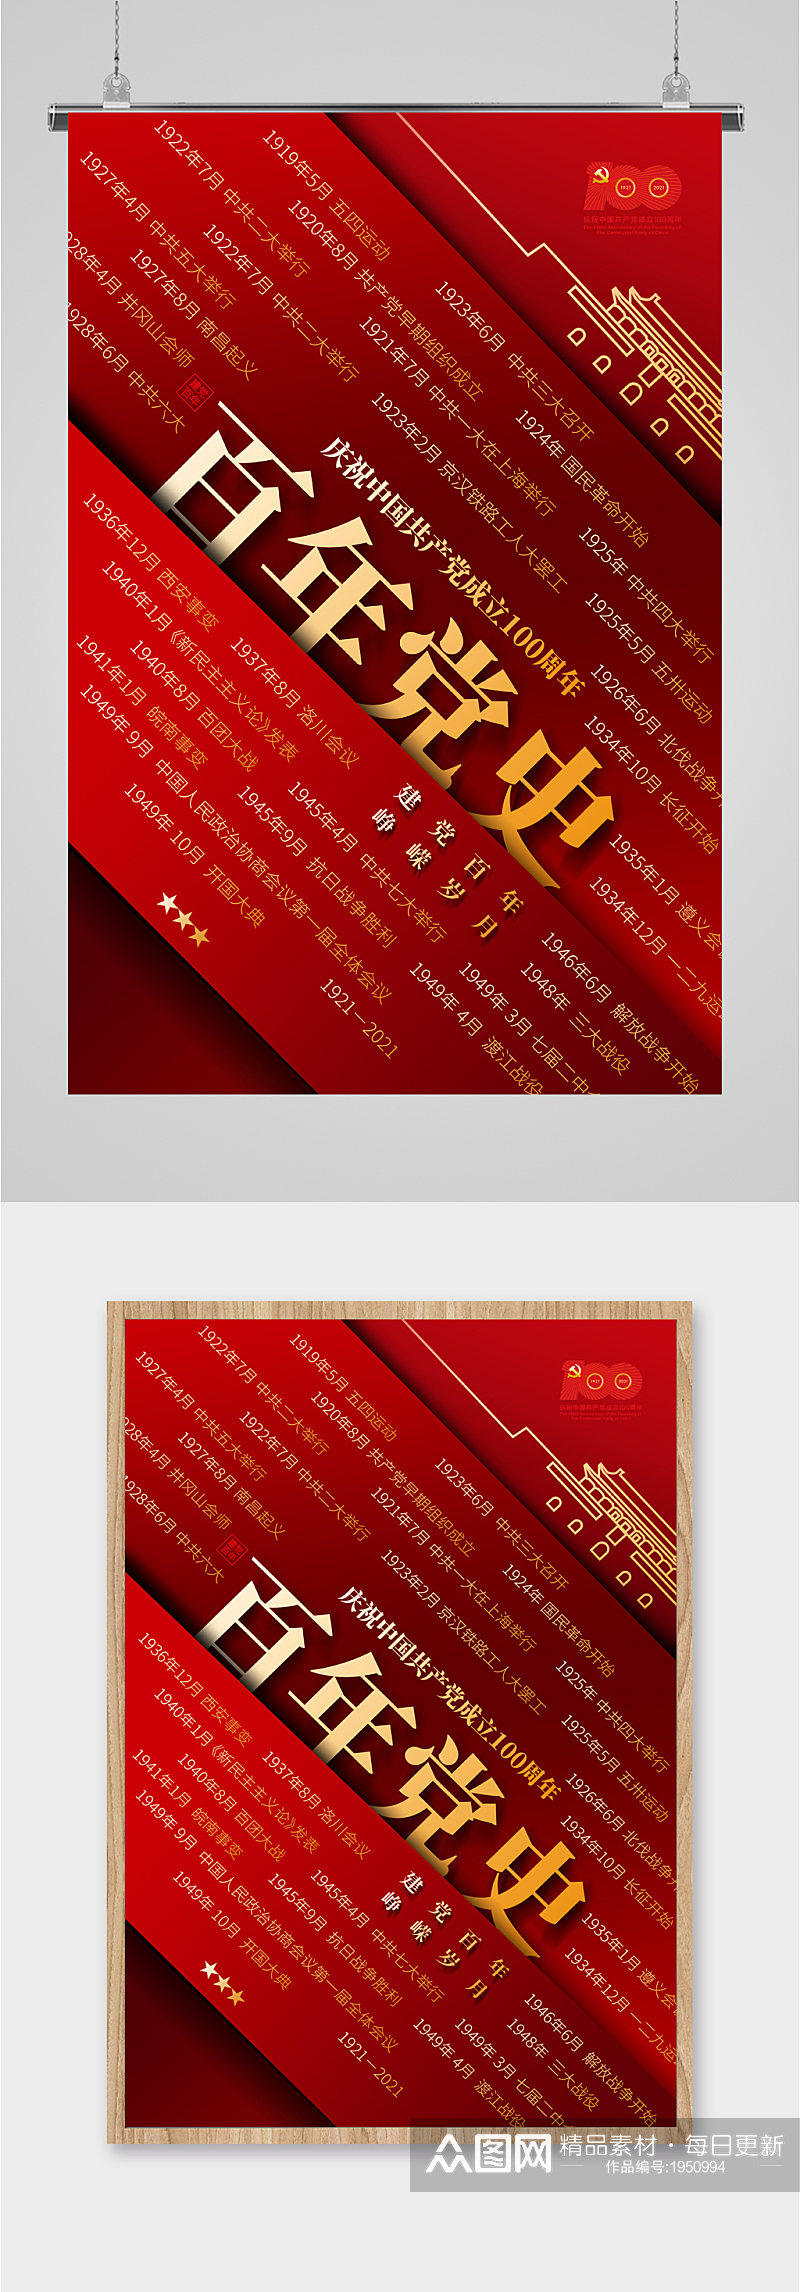 庆祝共产党成立100周年海报素材